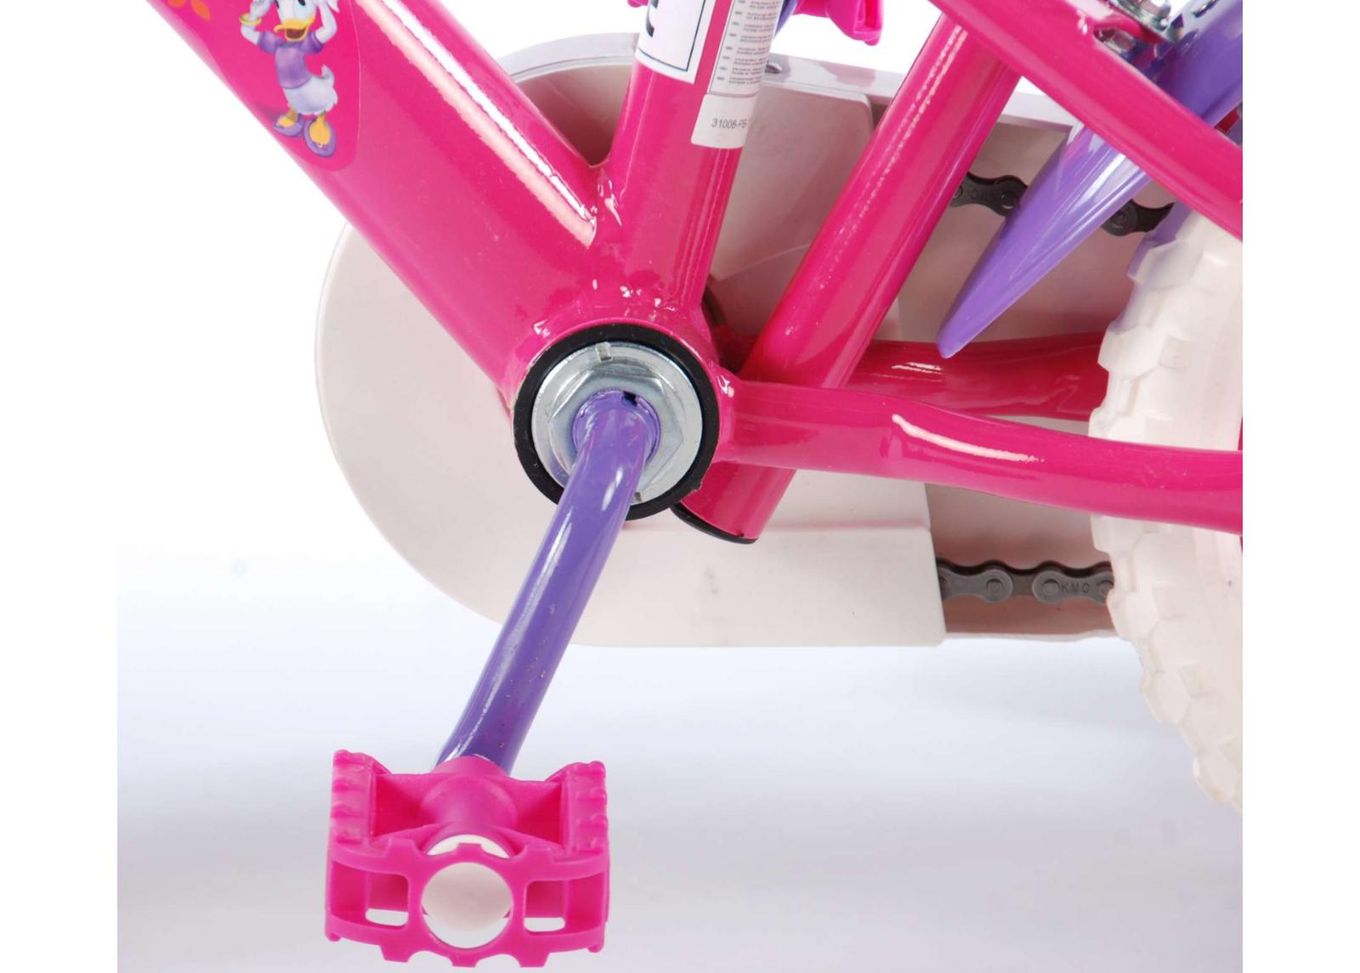 Tüdrukute jalgratas Disney Minnie Mouse Bow-Tique 10 tolli Volare suurendatud